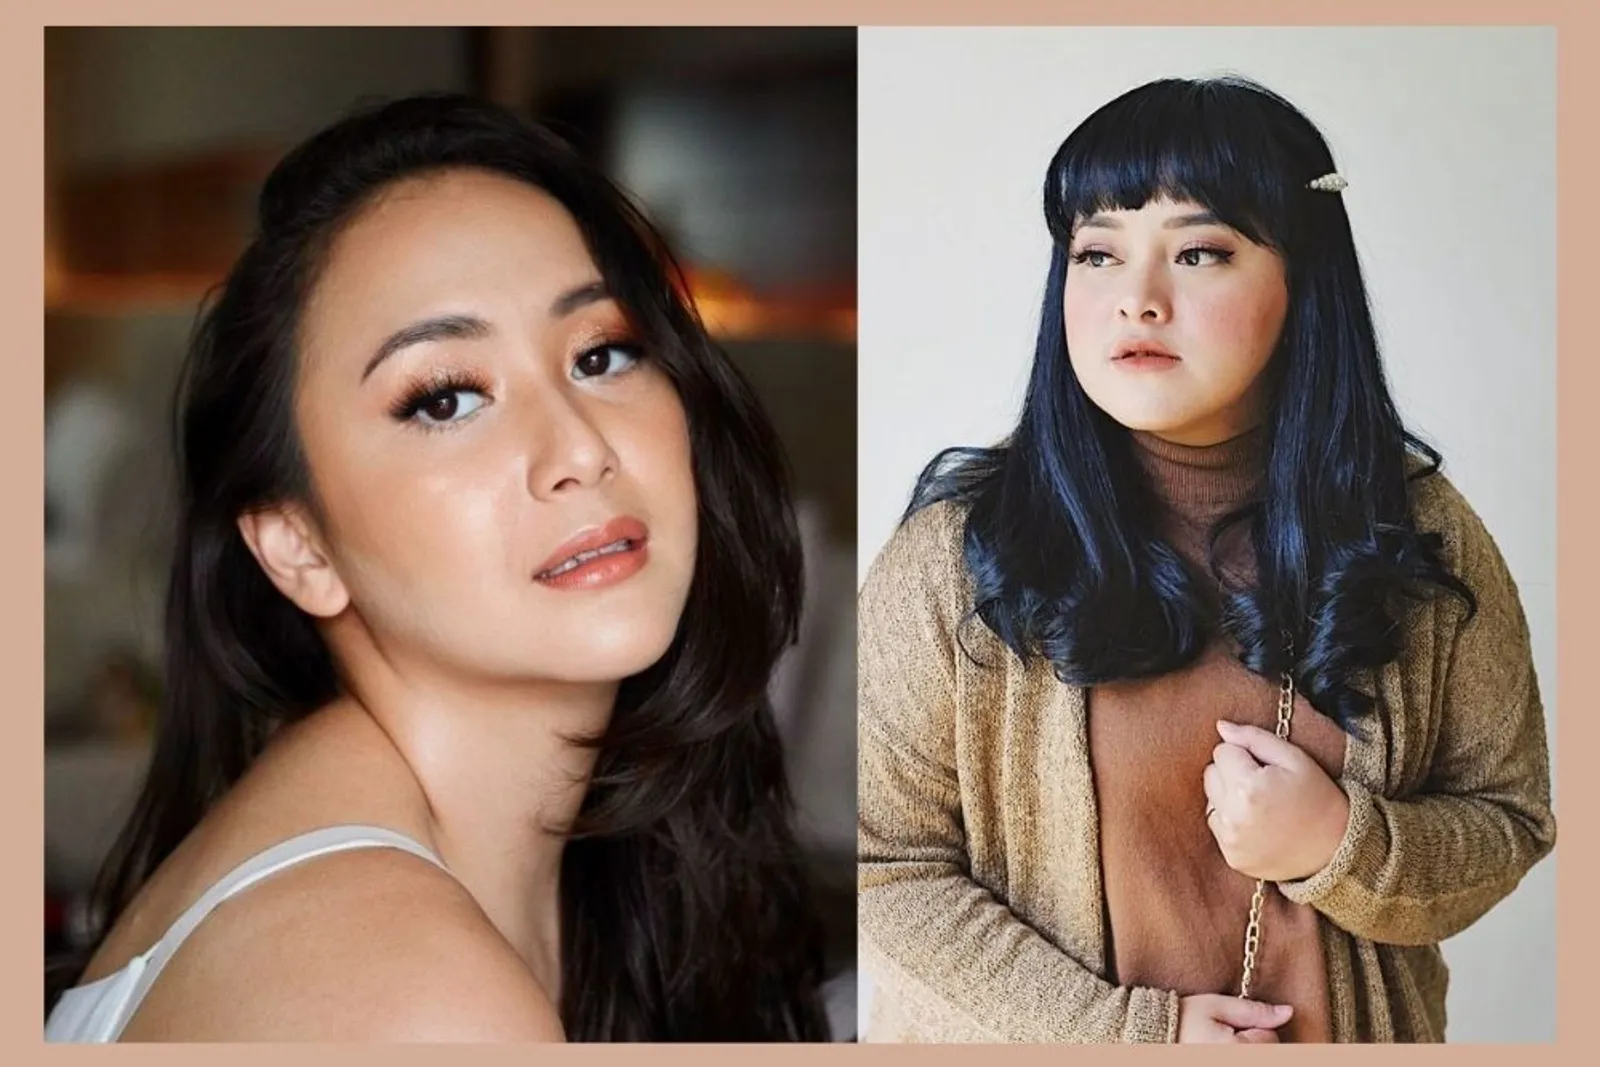 Road to BeautyFest Asia 2020 Hadirkan Lizzie Parra & Dinar Amanda